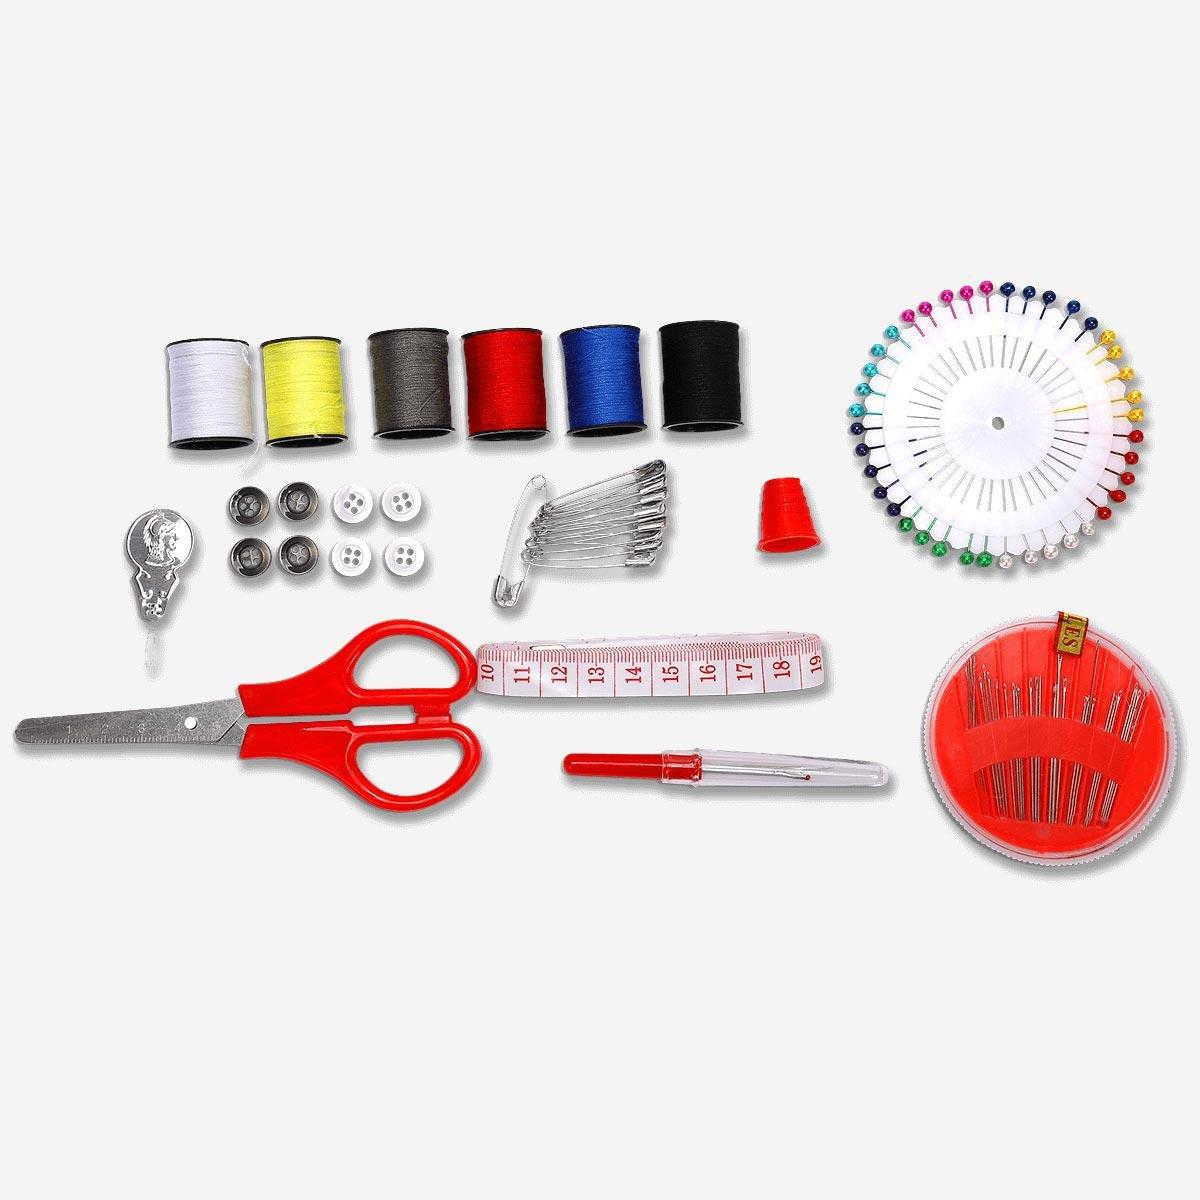 Sewing kit. 22 parts